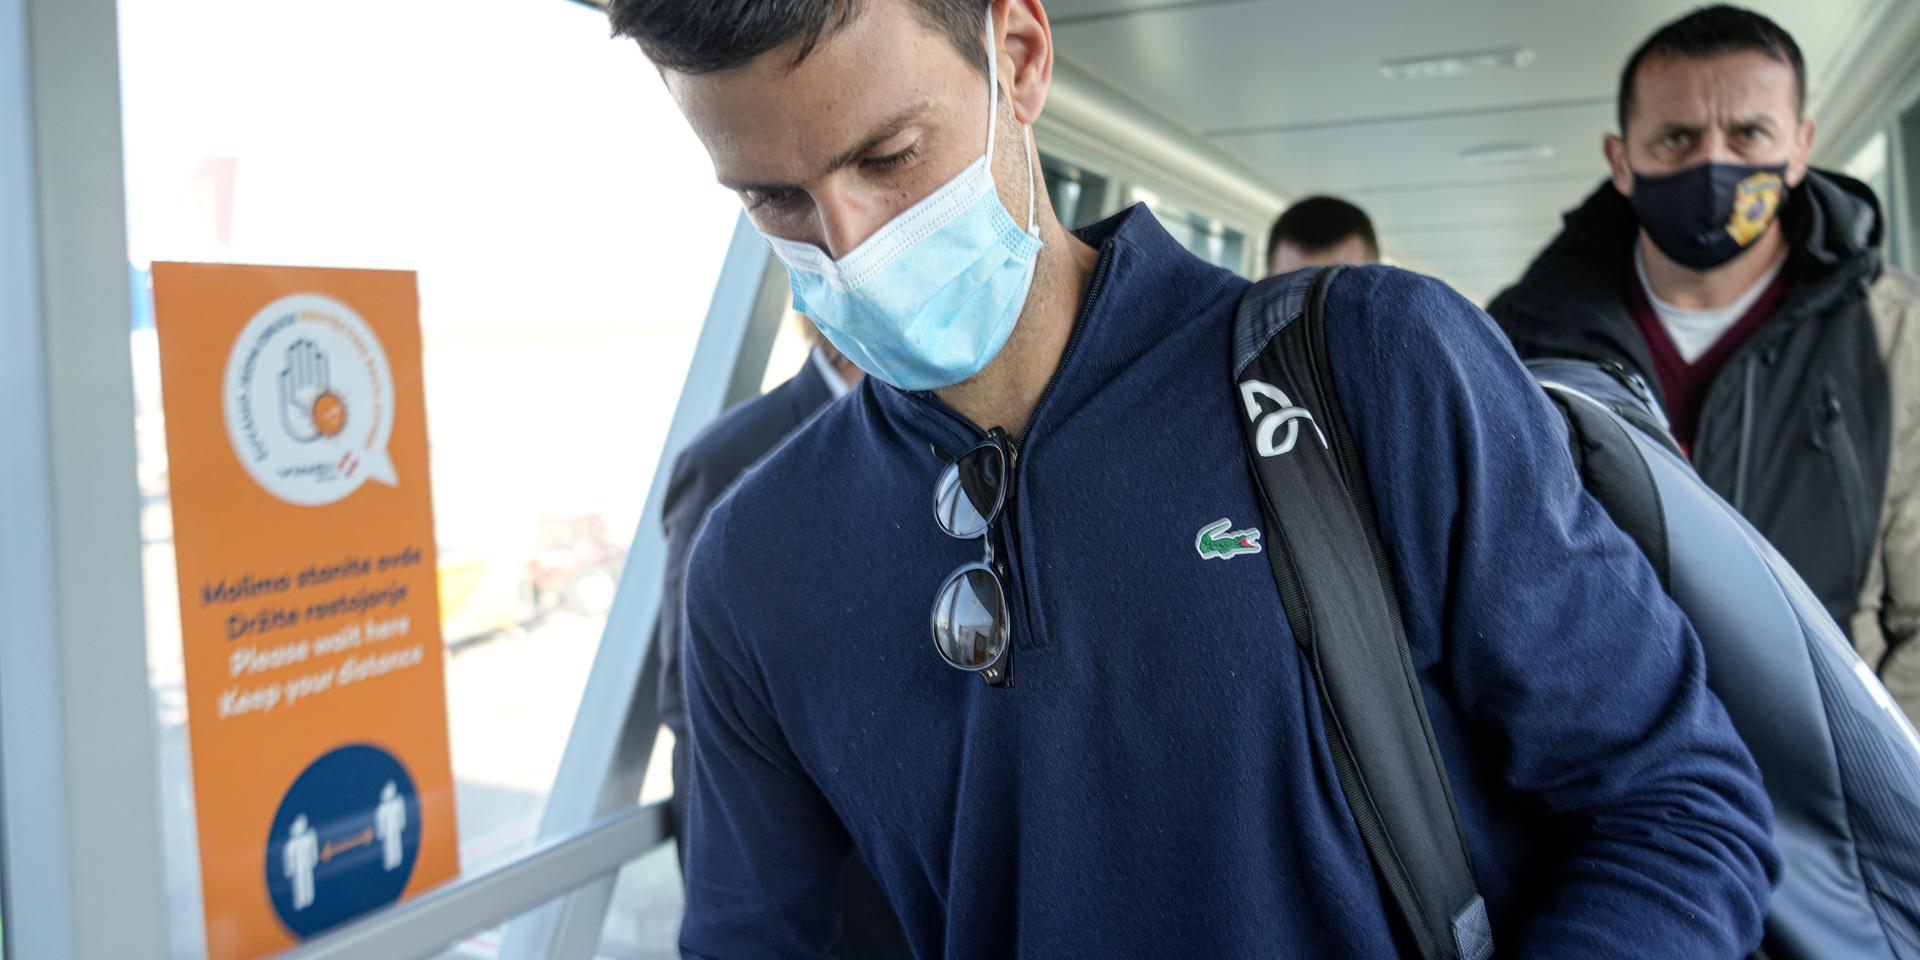 Novak Djokovic, iklädd en Lacoste-tröja, efter landningen i Belgrad.